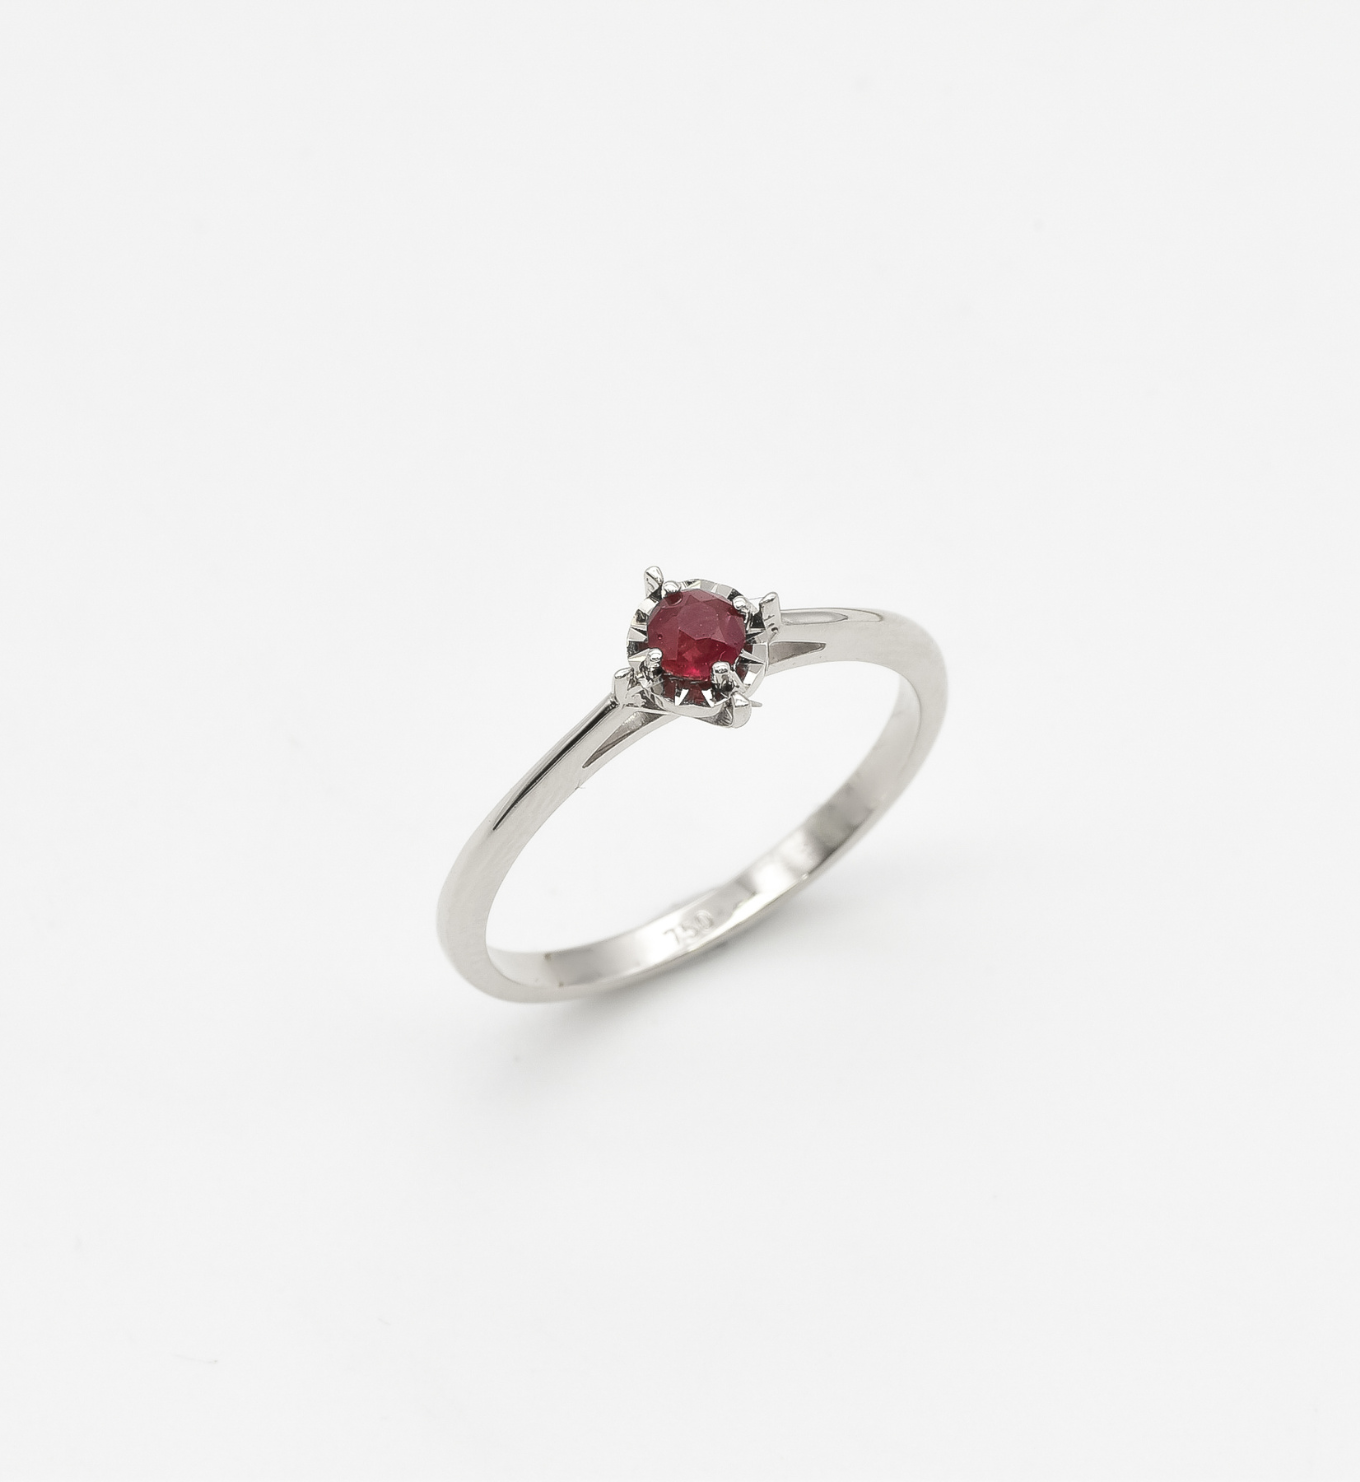 Dainty Ruby Ring, Minimalist Ruby Ring, 18k White Gold Ring